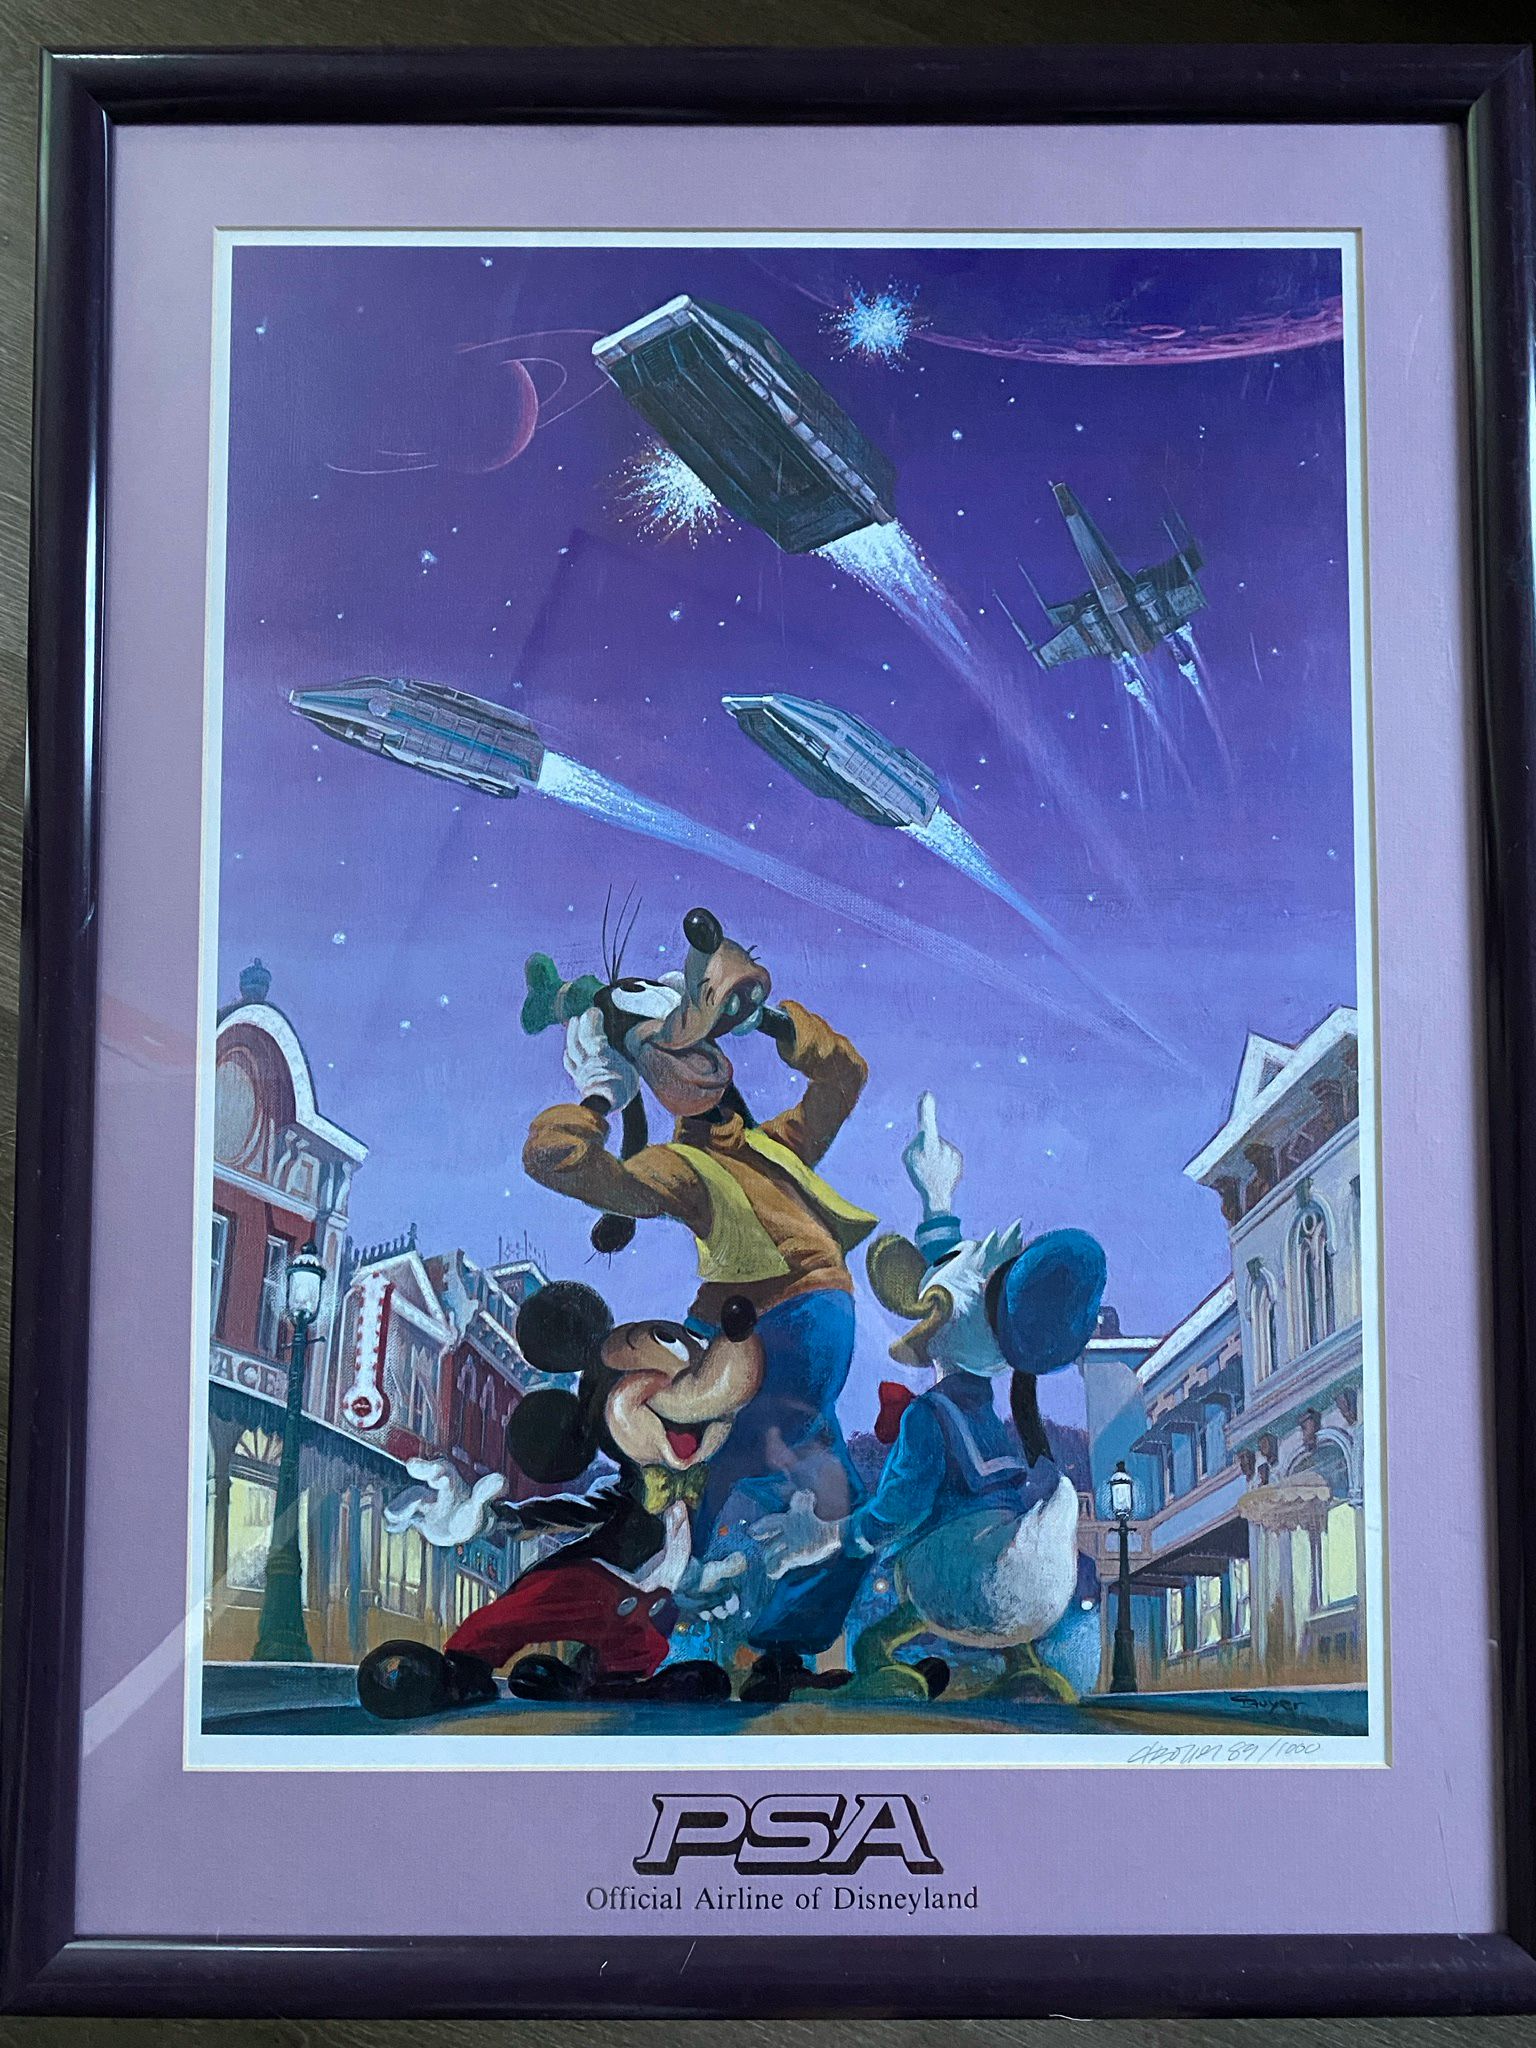 Rare Disney Airline Framed poster